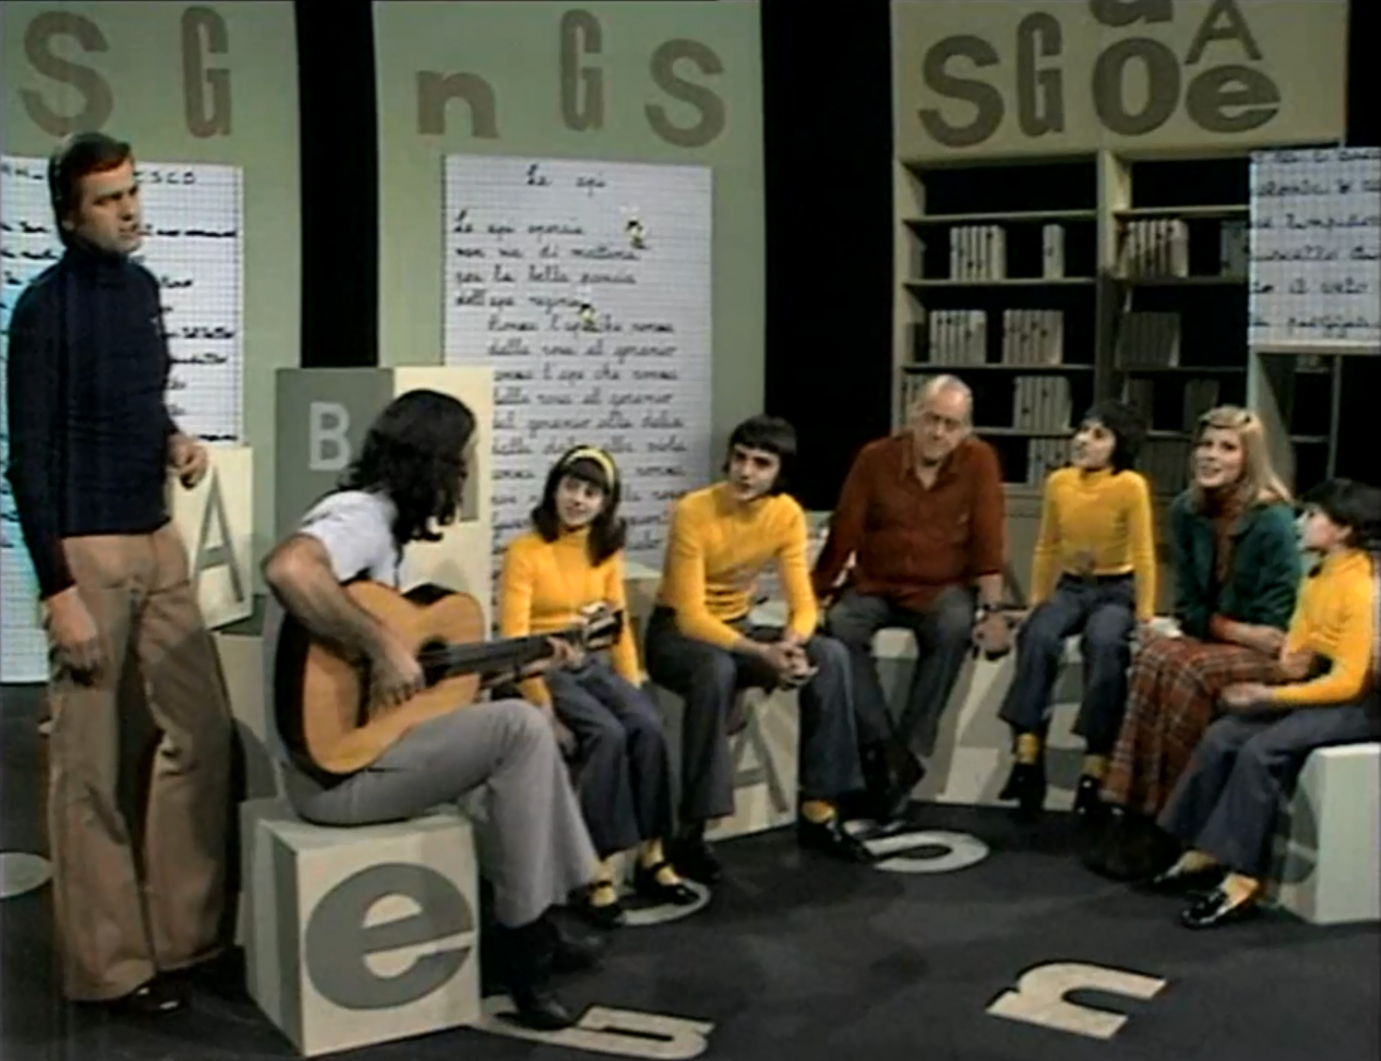 Sergio Edndrigo, Toquinho, Vinicius de Moraes, Marisa Sannia e 4 giovani coristi in uno studio della TV svizzera.